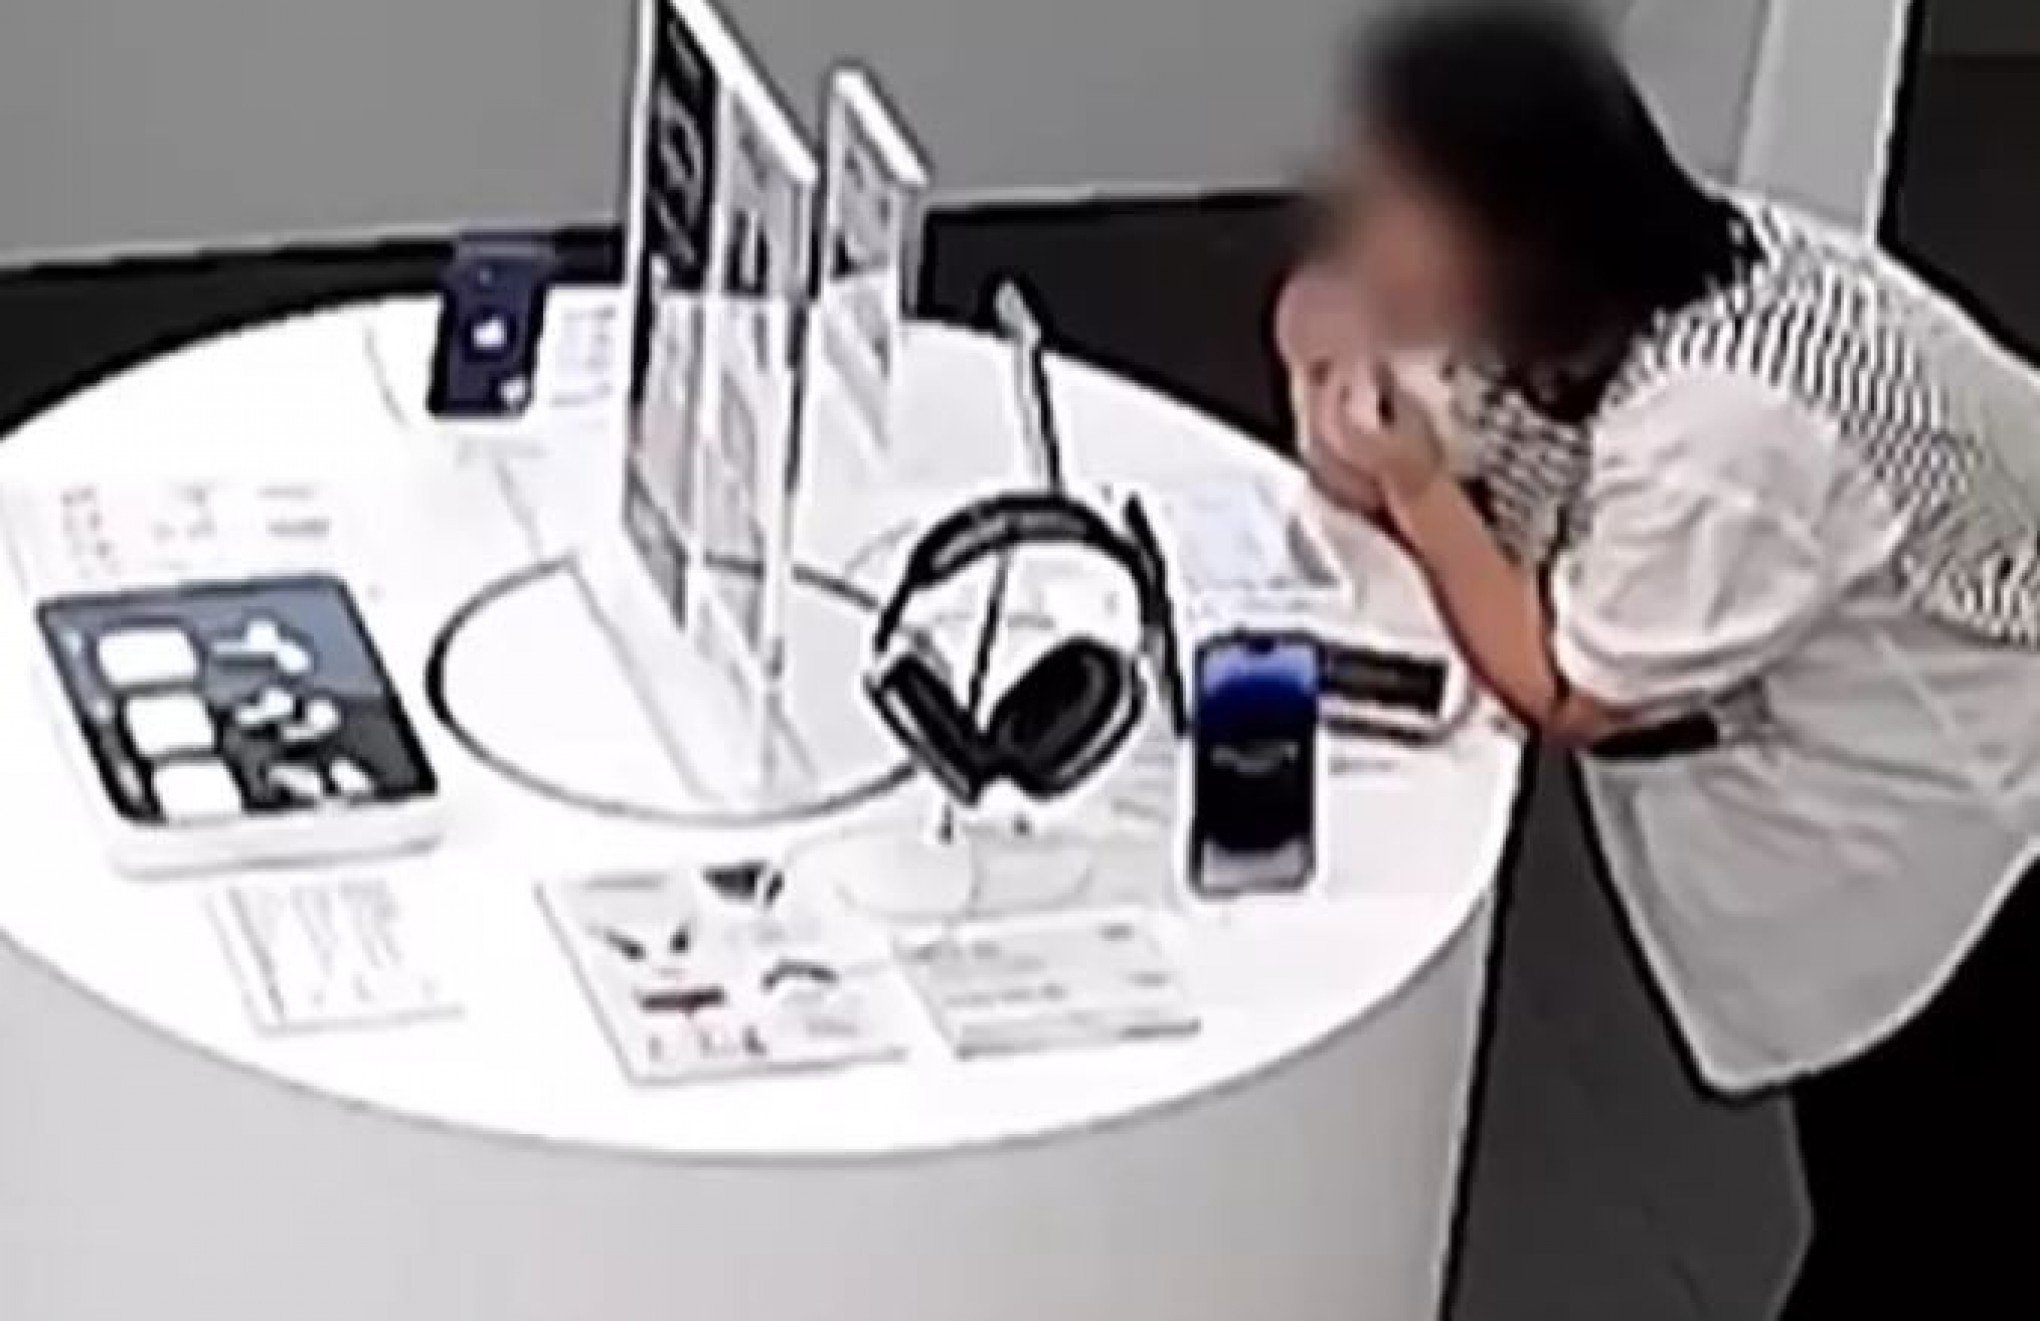 Vídeo: Mulher rói cabo de segurança que prendia iPhone no balcão e furta aparelho